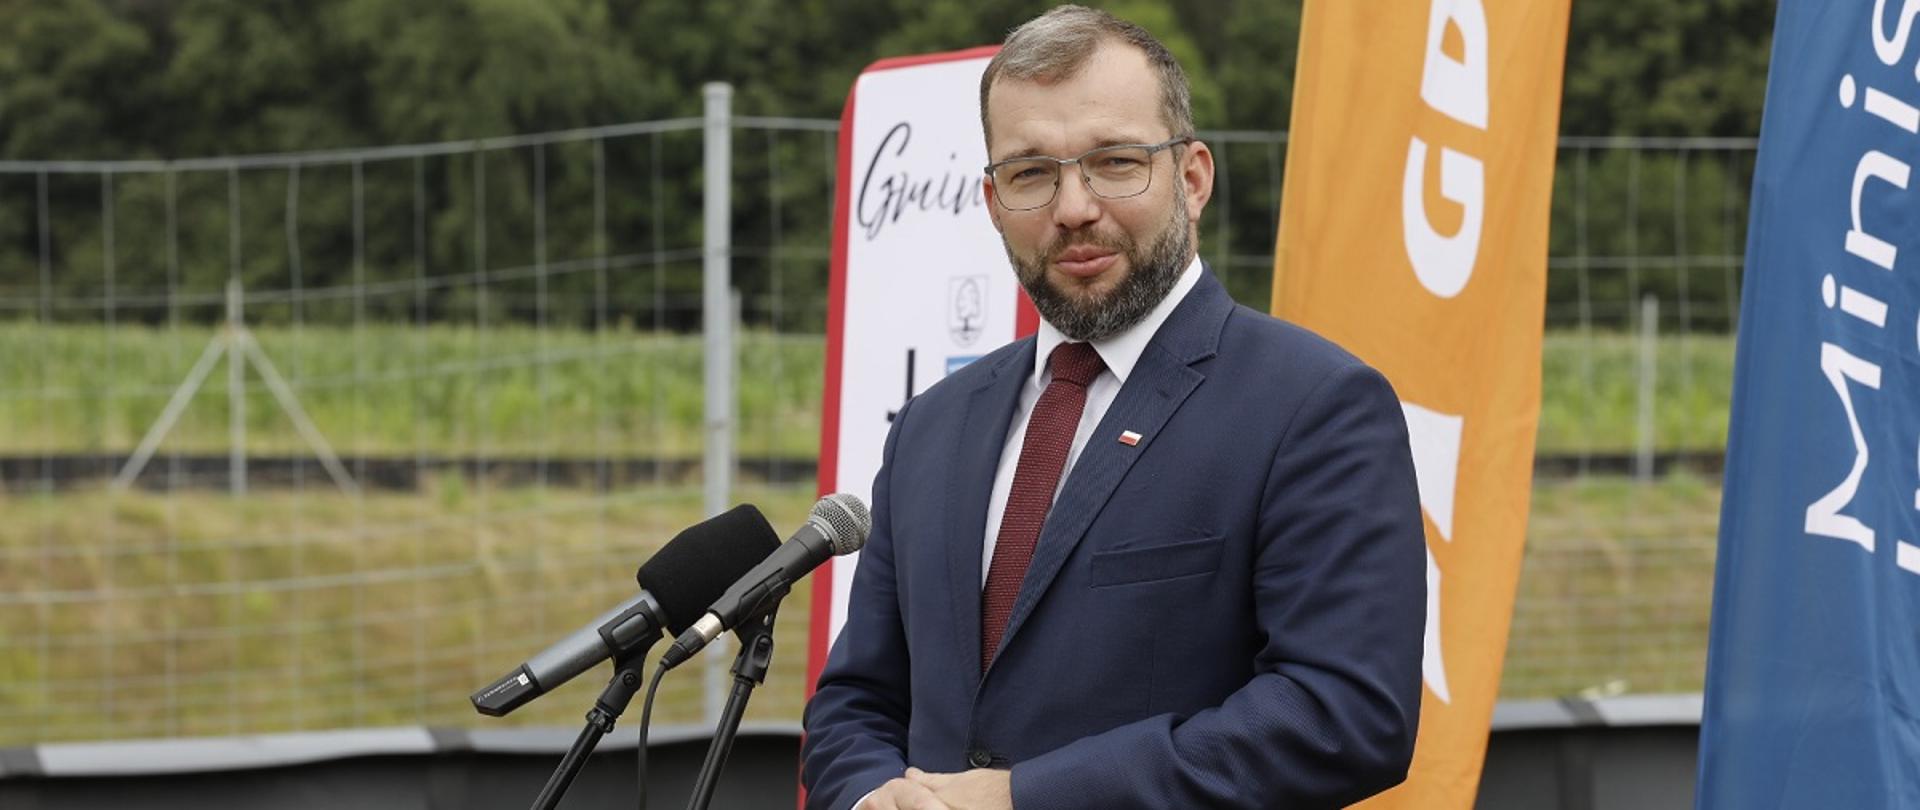 Minister funduszy i polityki regionalnej Grzegorz Puda stoi przy mikrofonie i przemawia, za jego plecami windery GDDKiA i Min. Infrastruktury